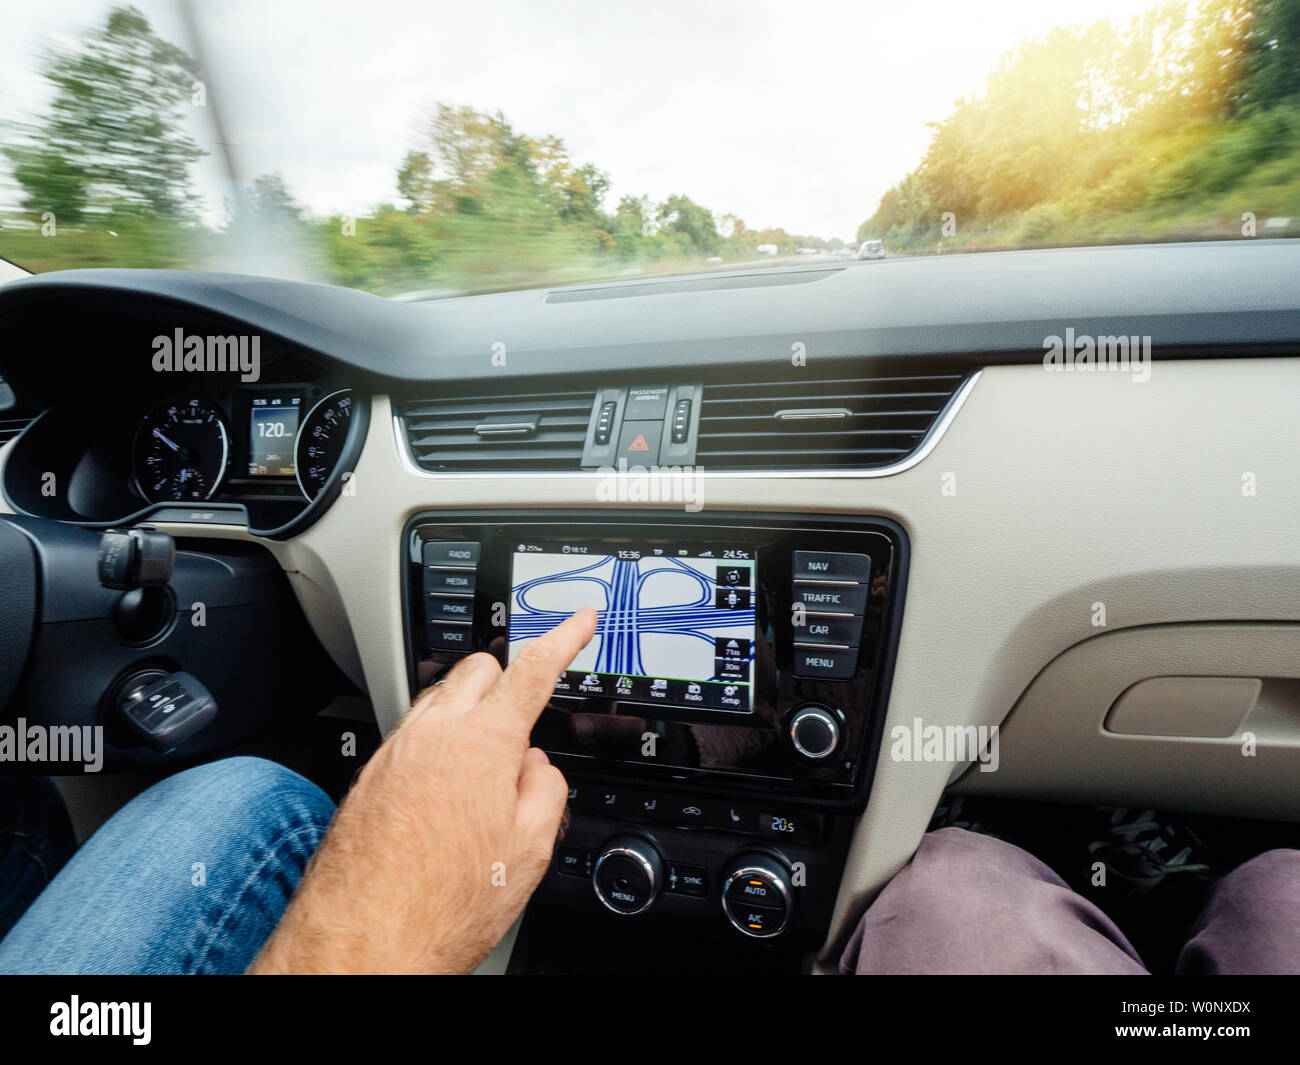 Cologne, Allemagne - 15 août 2018 : man main pointant vers le rond-point multiples sur la voiture modèle GPS intégré dans le tableau de bord de l'autoroute allemande Banque D'Images